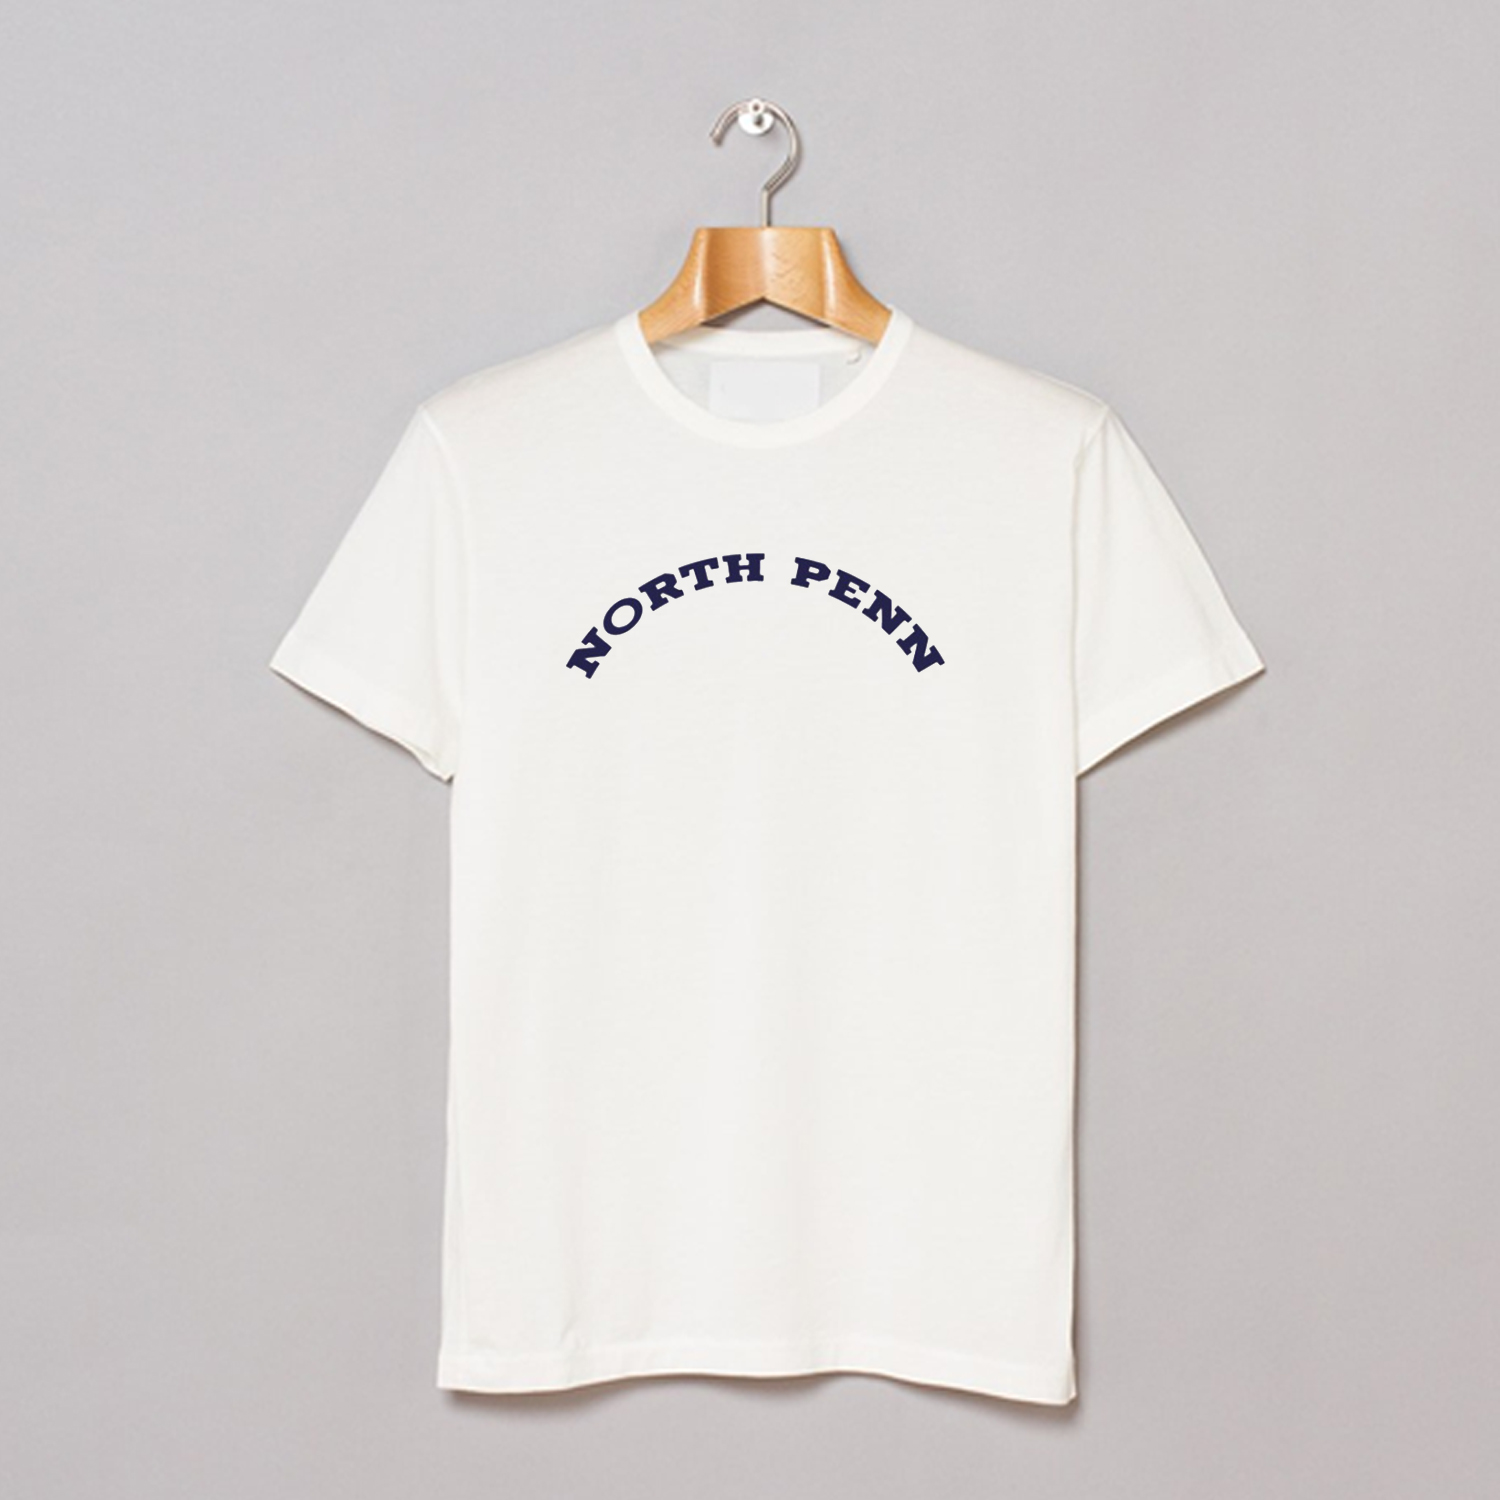 Ben Platt North Penn T Shirt AI